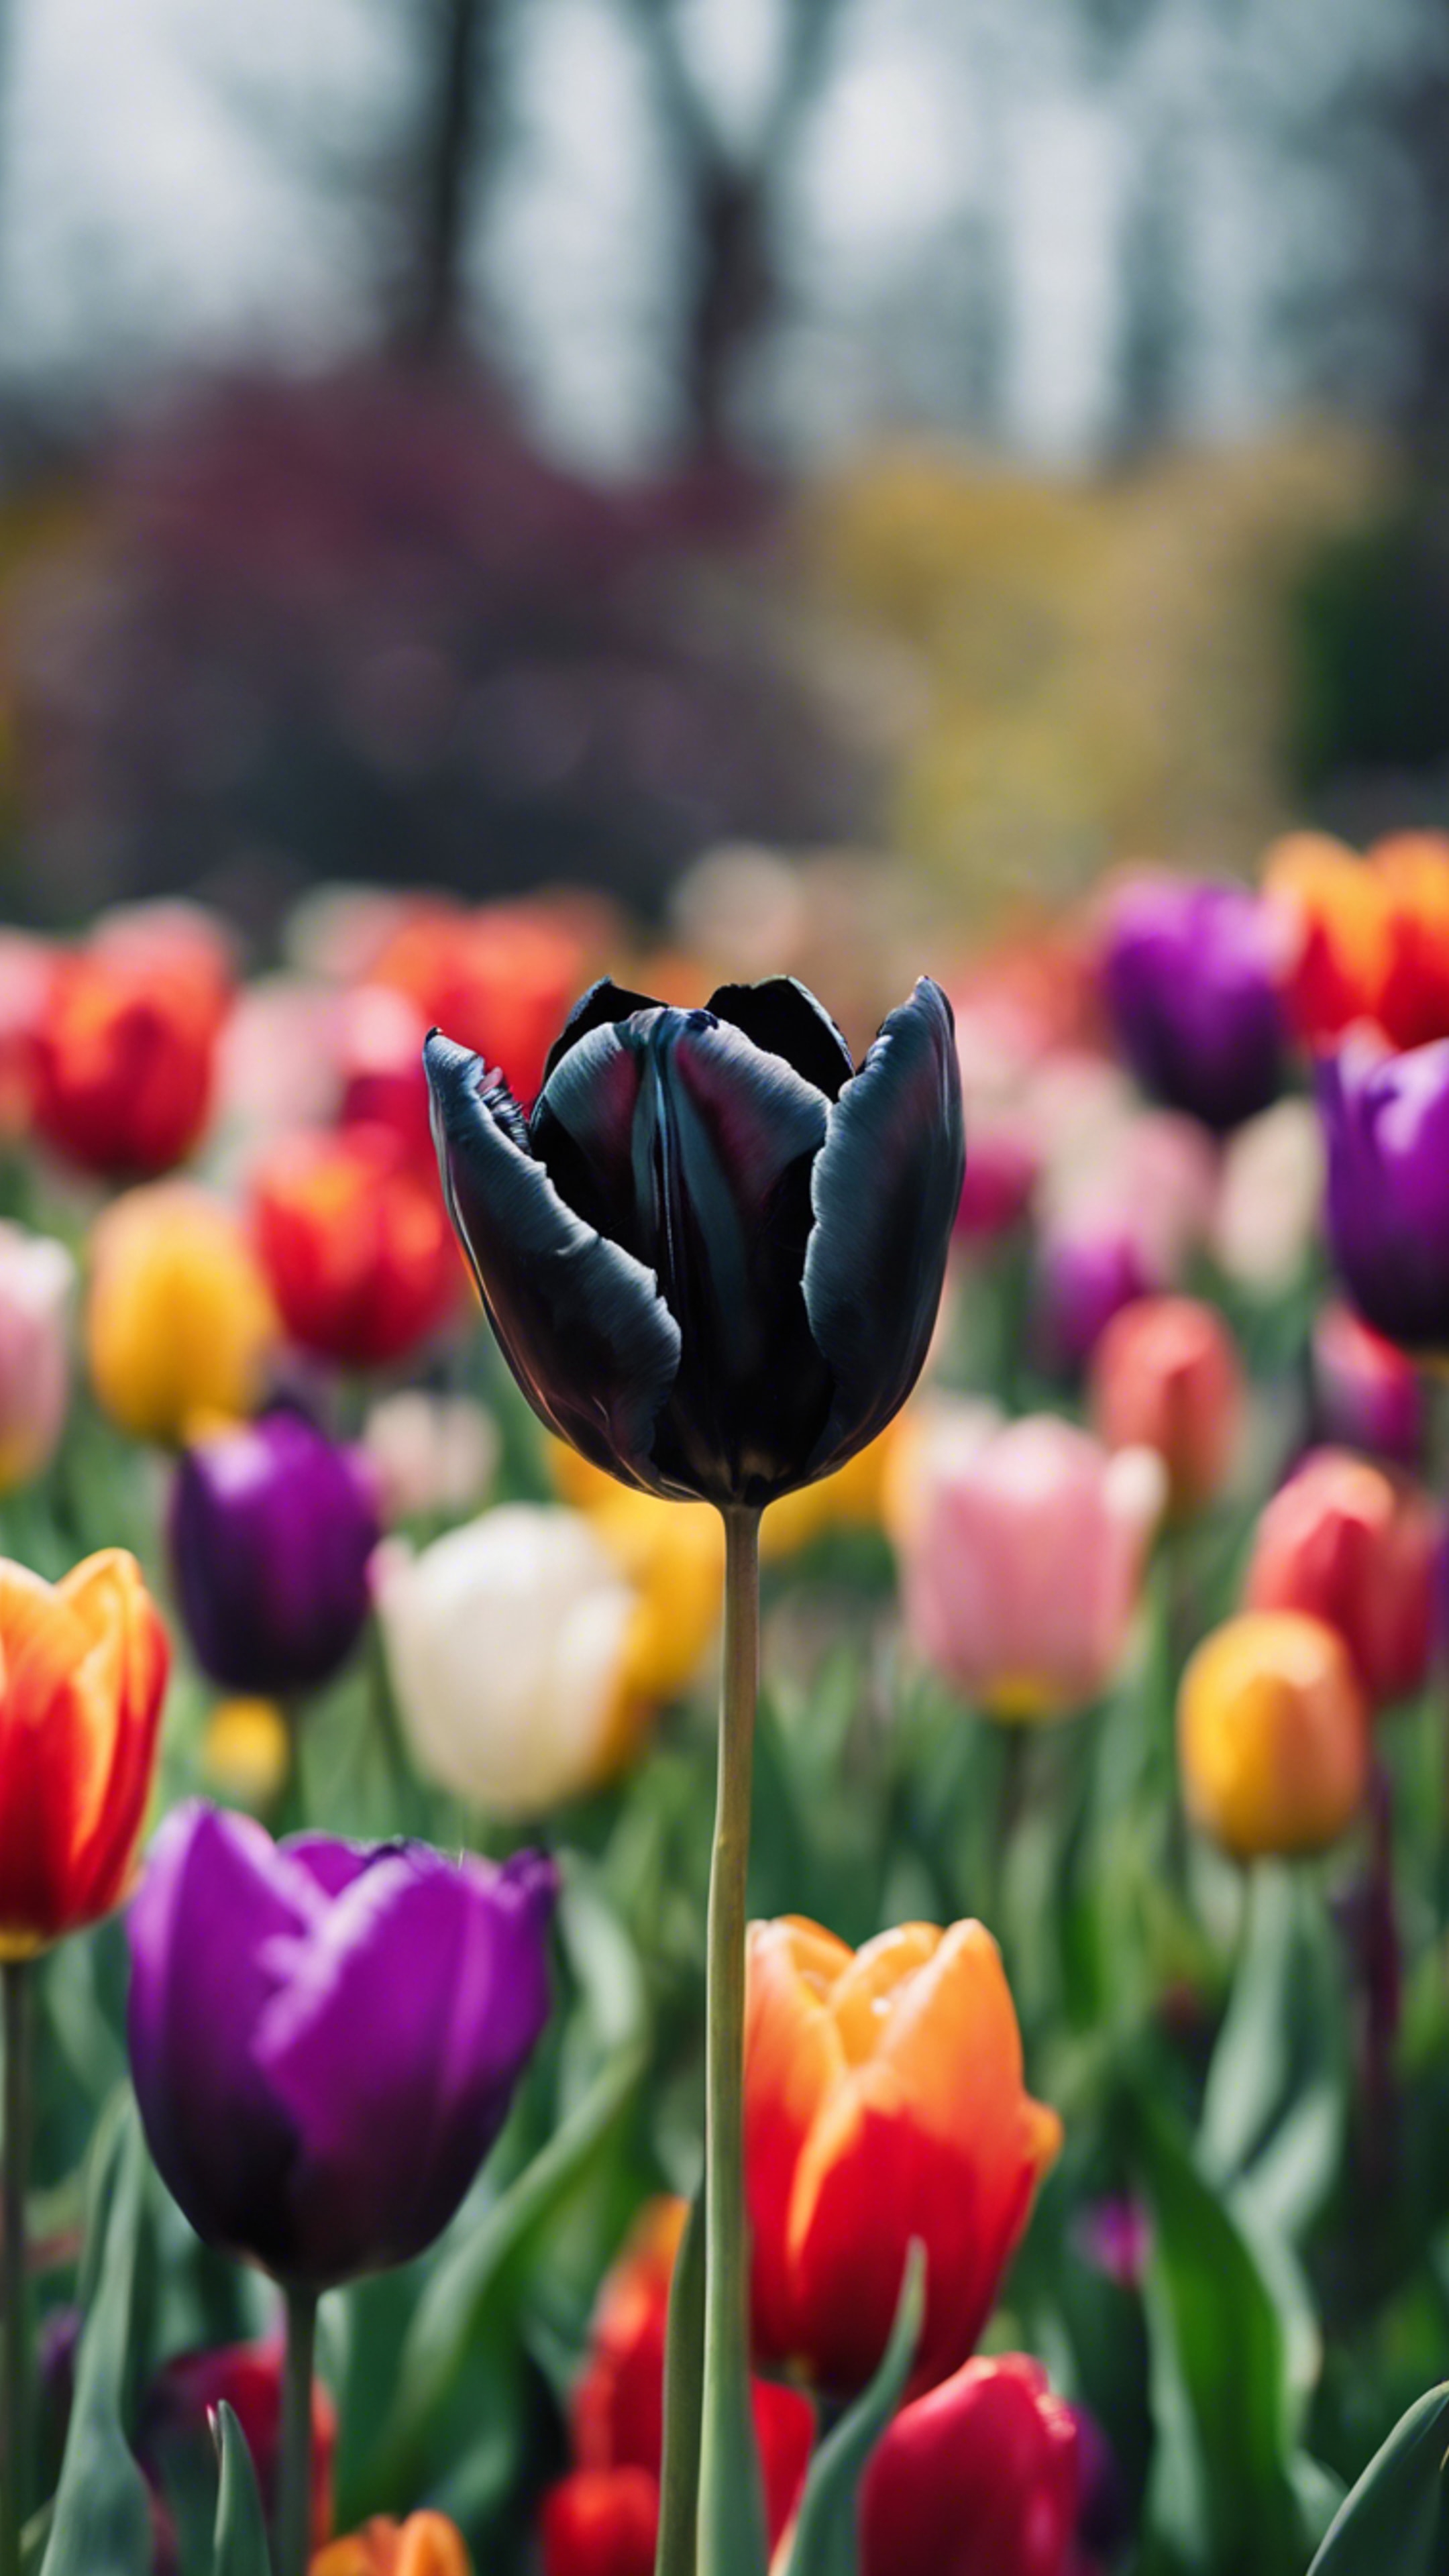 A delicate black tulip, standing out dramatically among a vibrant spray of multicolored tulips in a spring garden. Divar kağızı[60dfa6a8a46243228945]